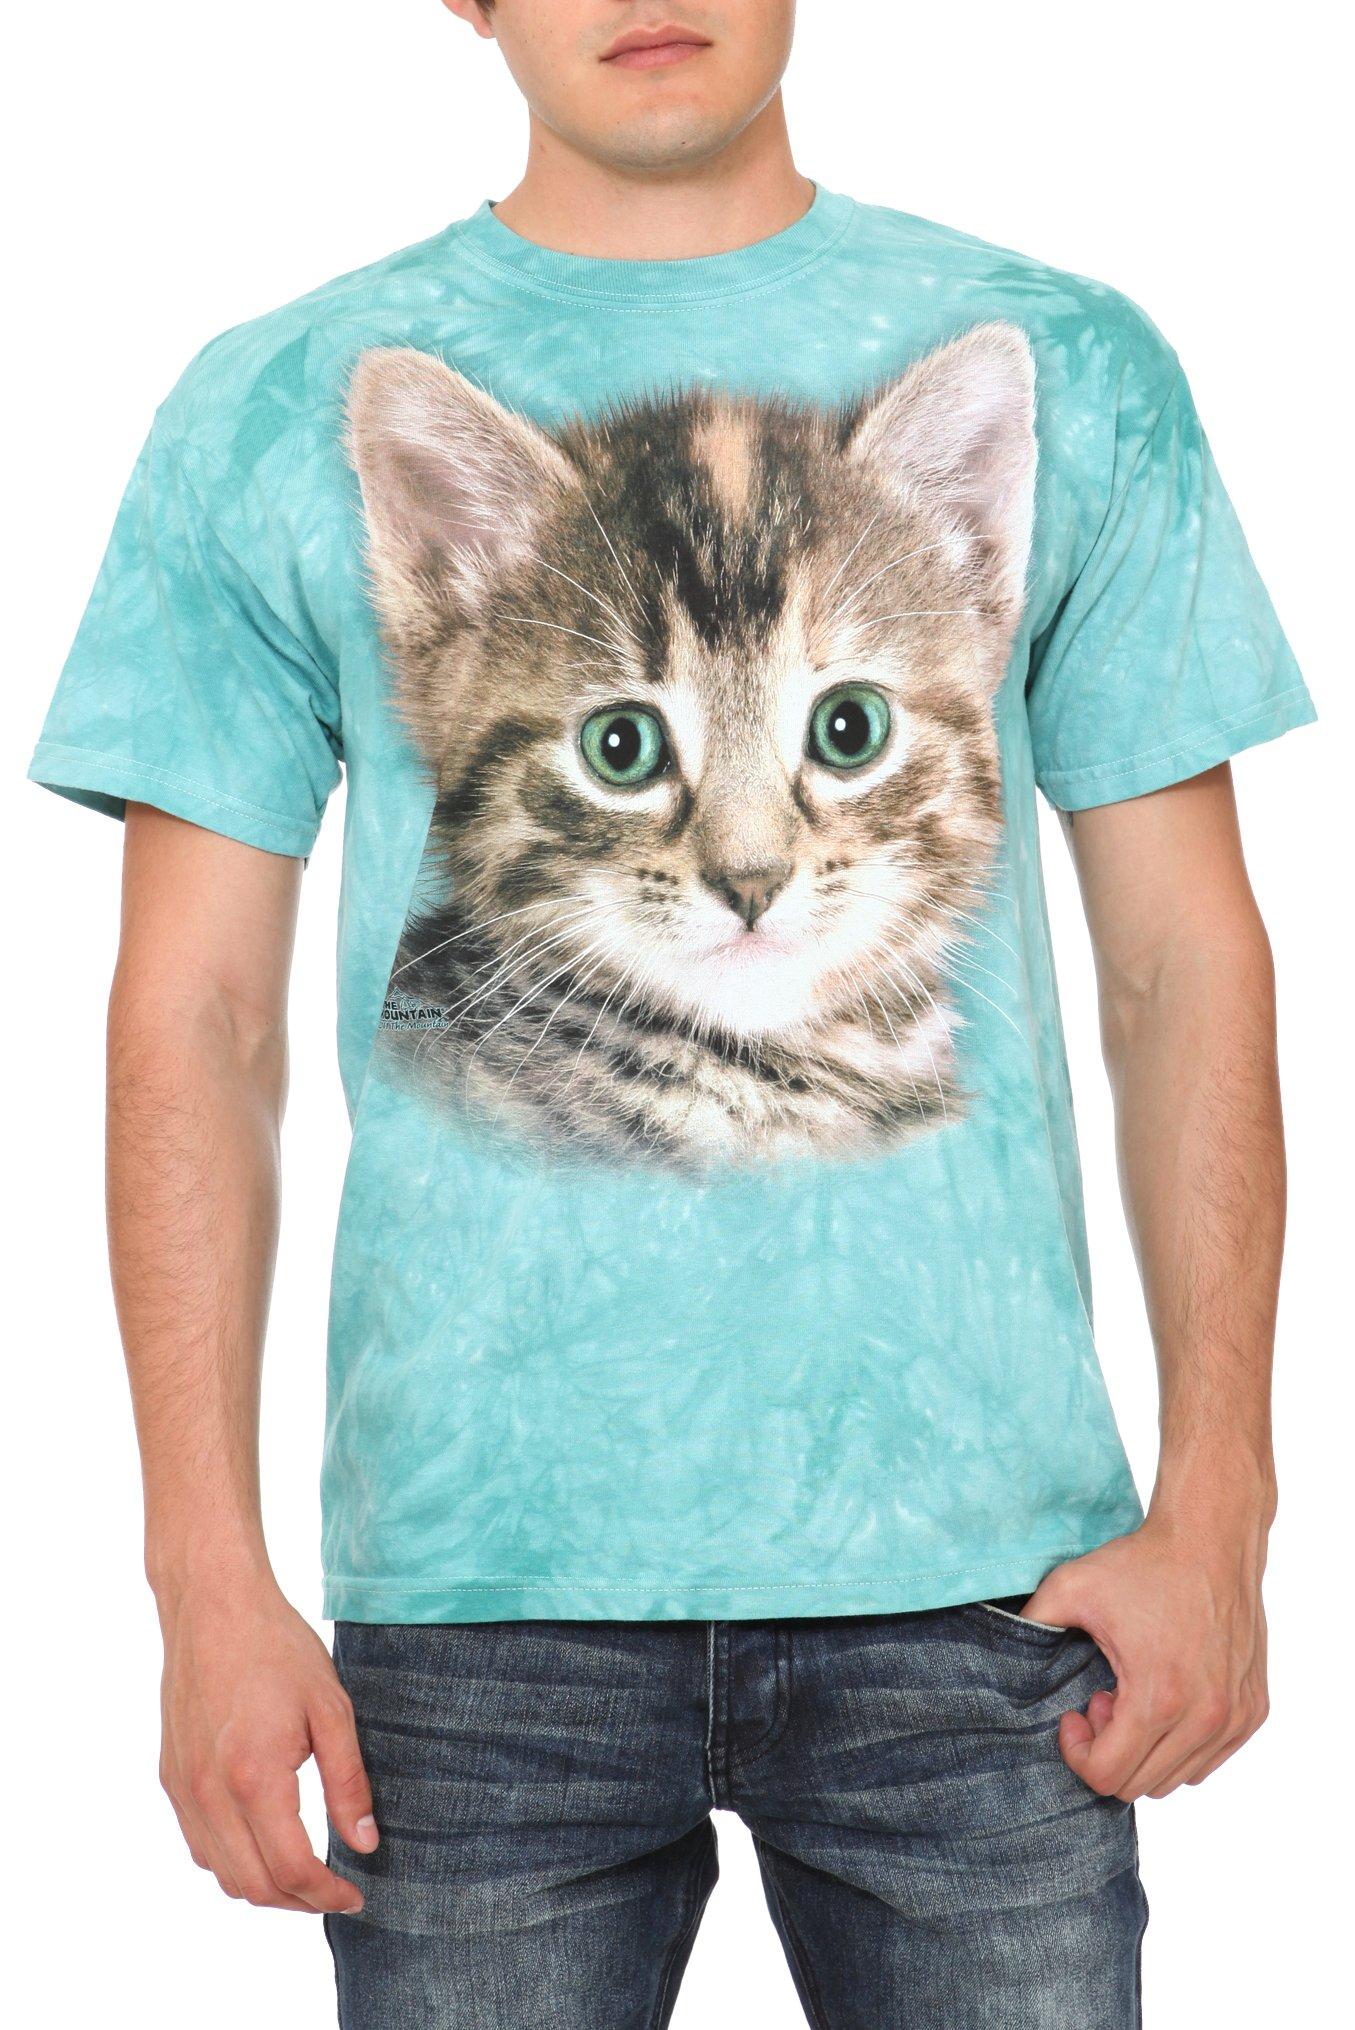 Tyler The Kitten T-Shirt, BLACK, hi-res